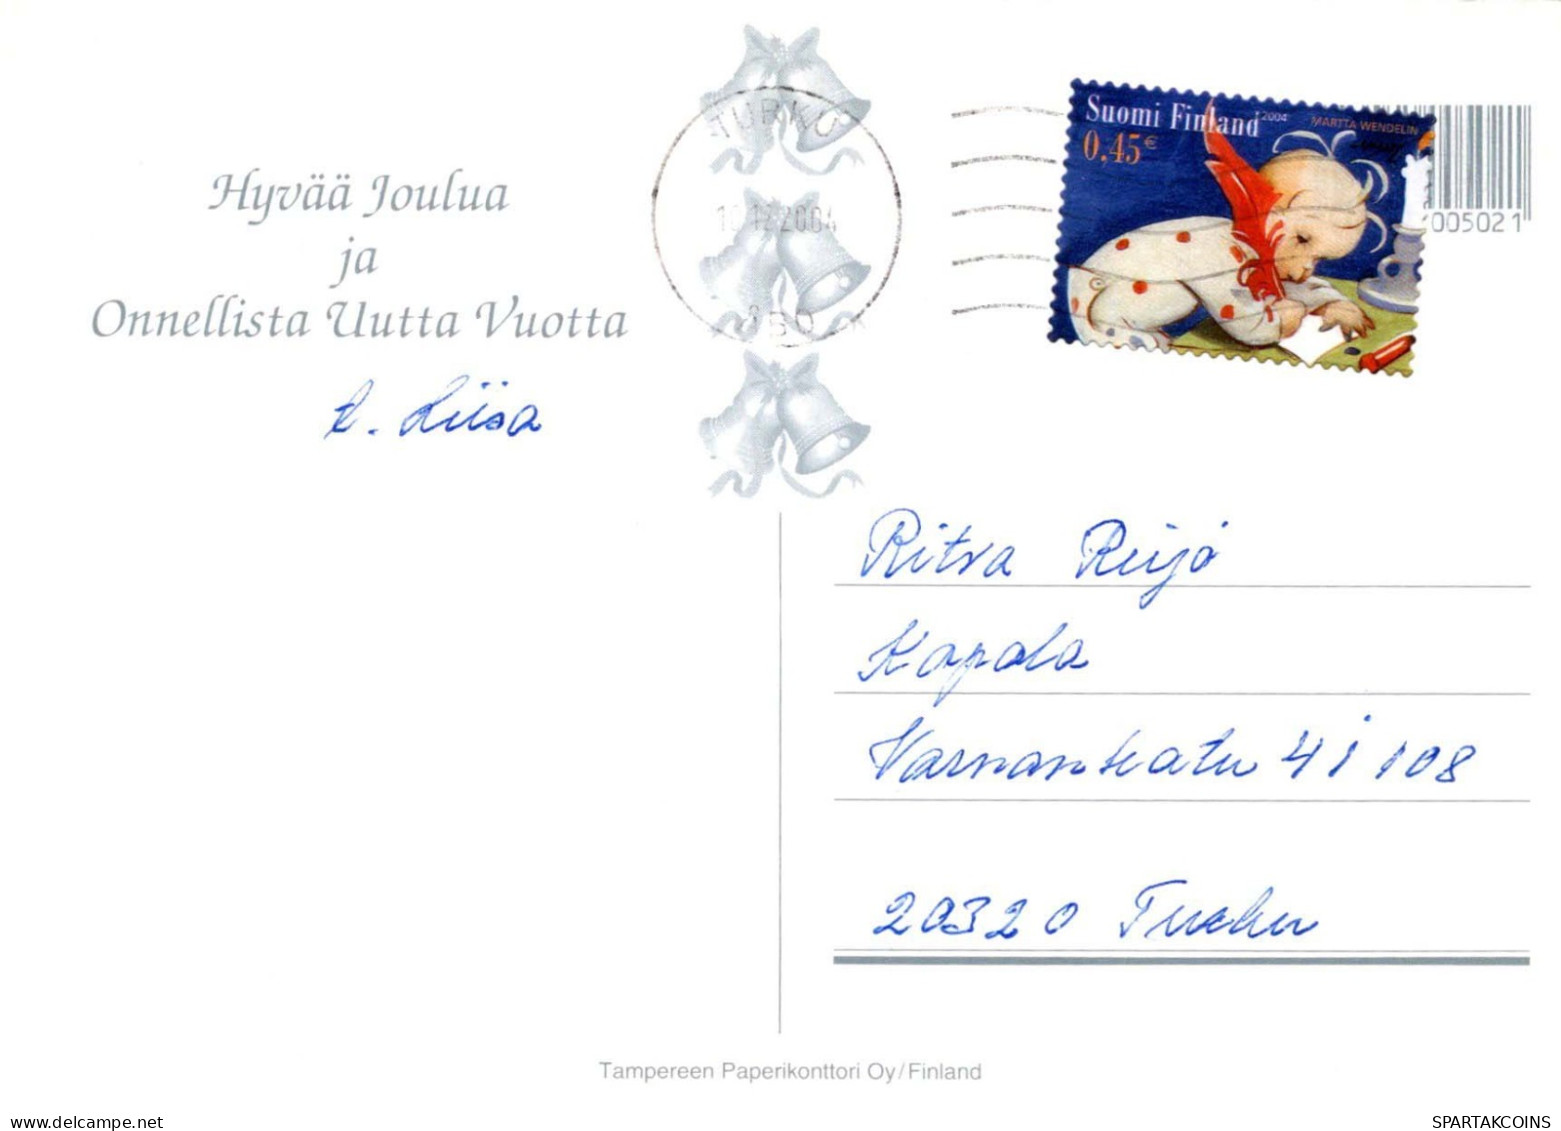 PÈRE NOËL Bonne Année Noël Vintage Carte Postale CPSM #PBL304.FR - Santa Claus